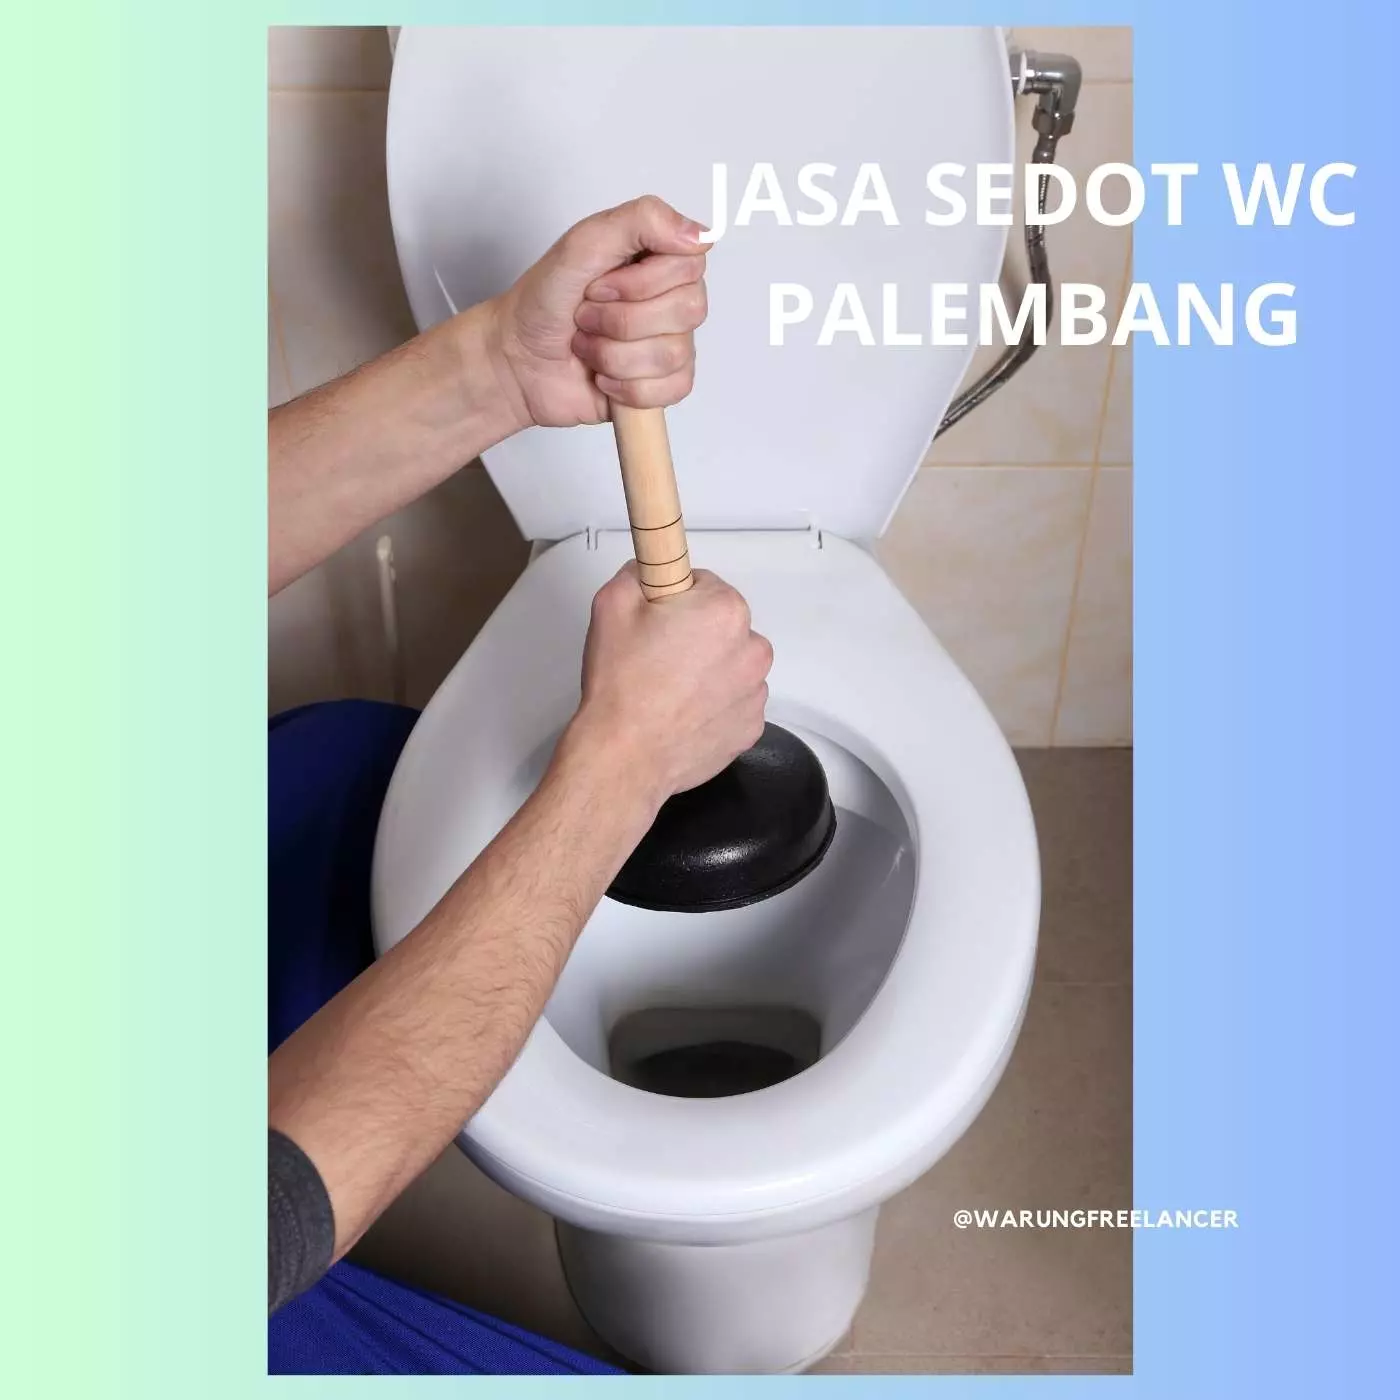 Jasa Sedot WC Palembang